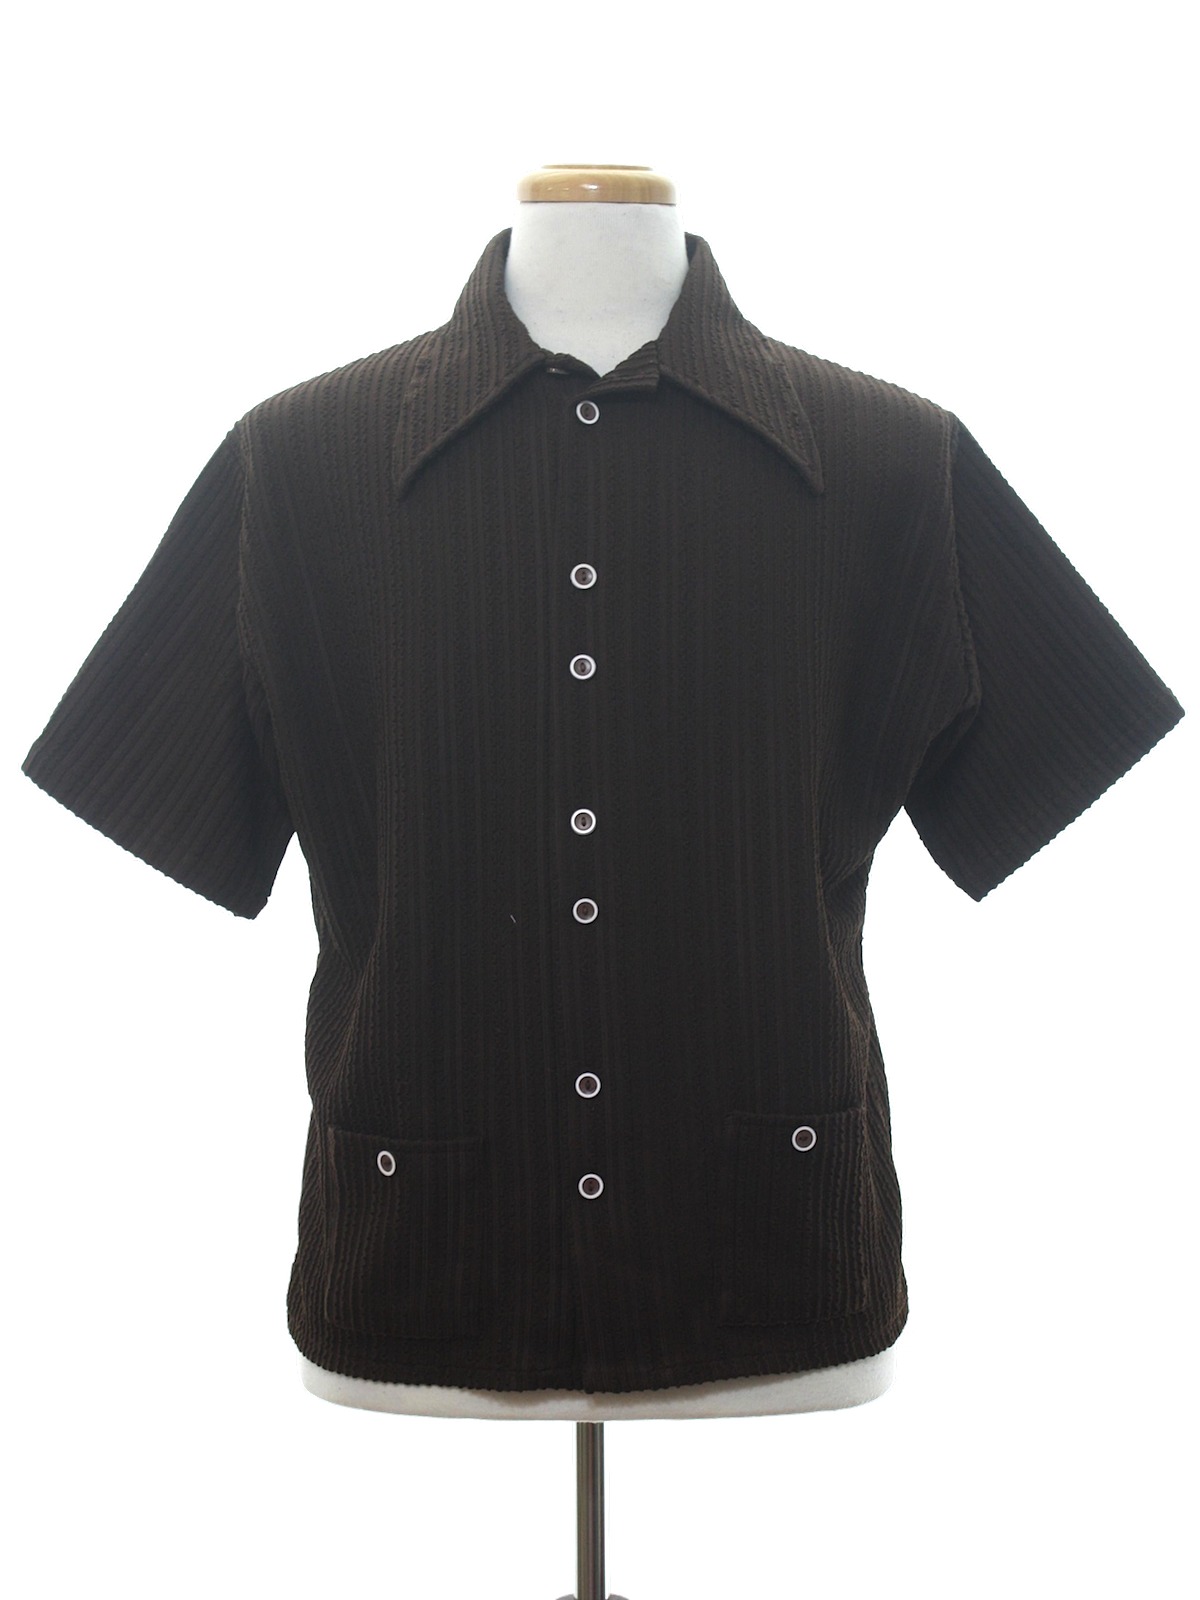 Gino Barozzi Seventies Vintage Knit Shirt: 70s -Gino Barozzi- Mens dark ...